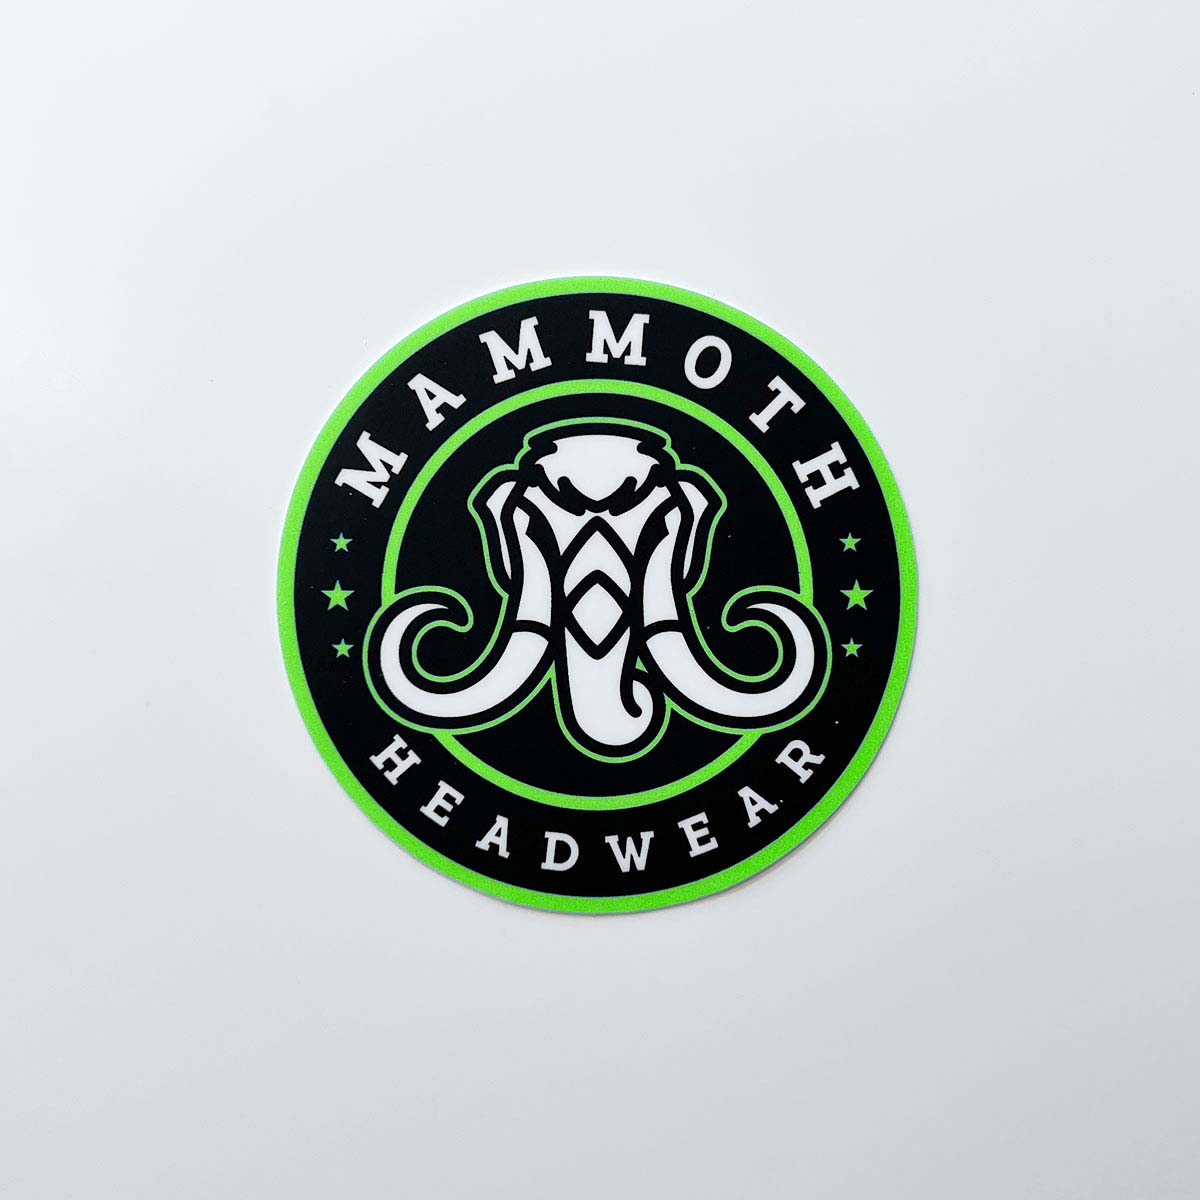 mammoth headwear stickers in green